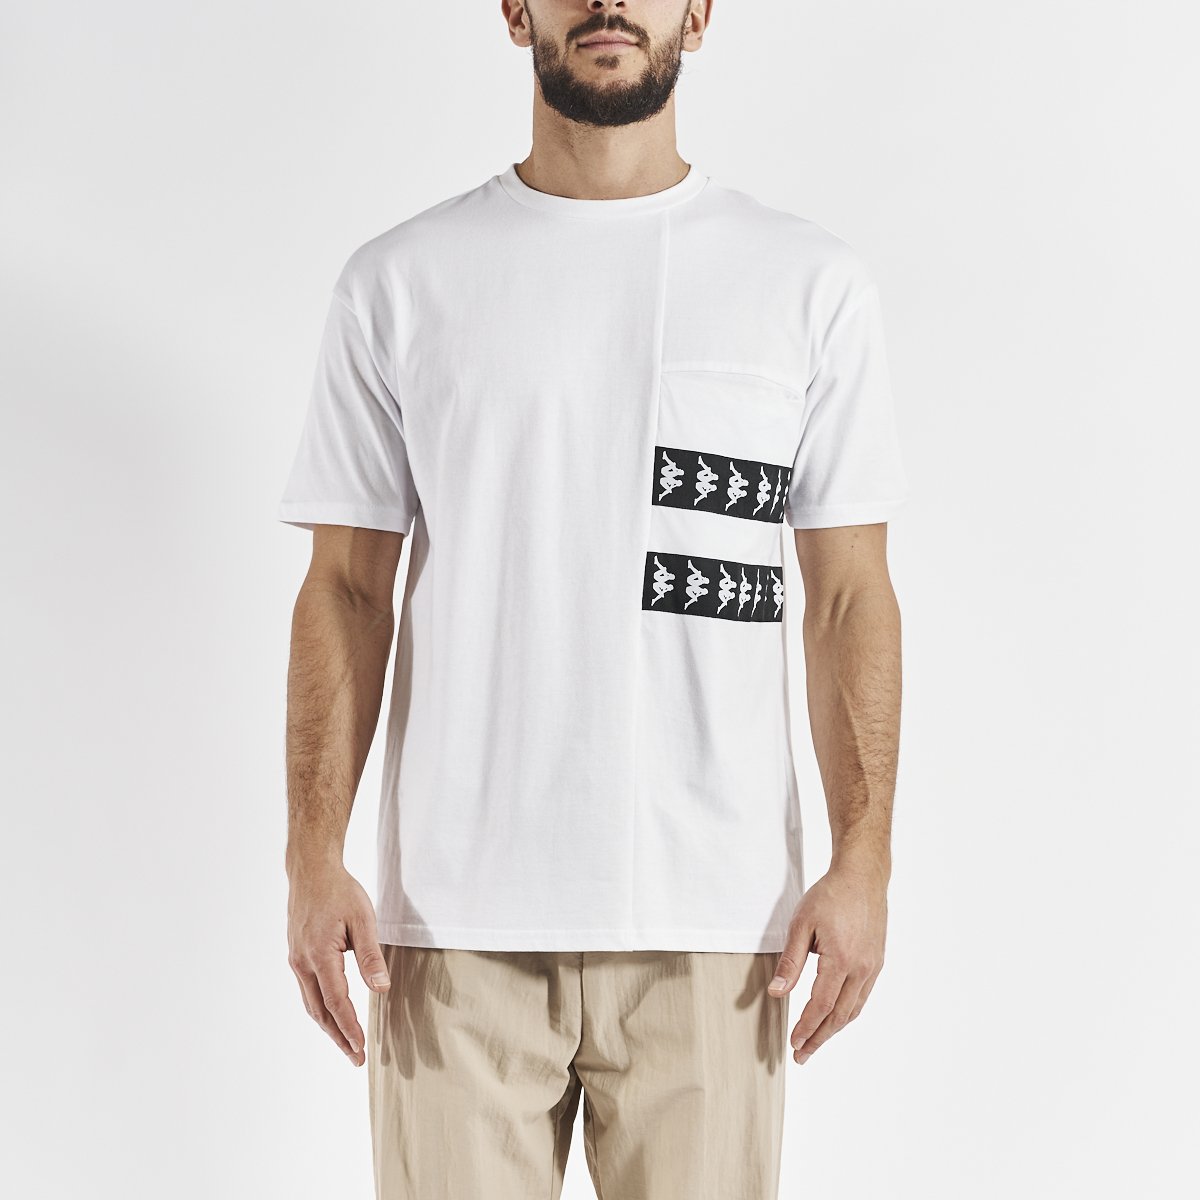 Camiseta Efto hombre blanco - Imagen 5